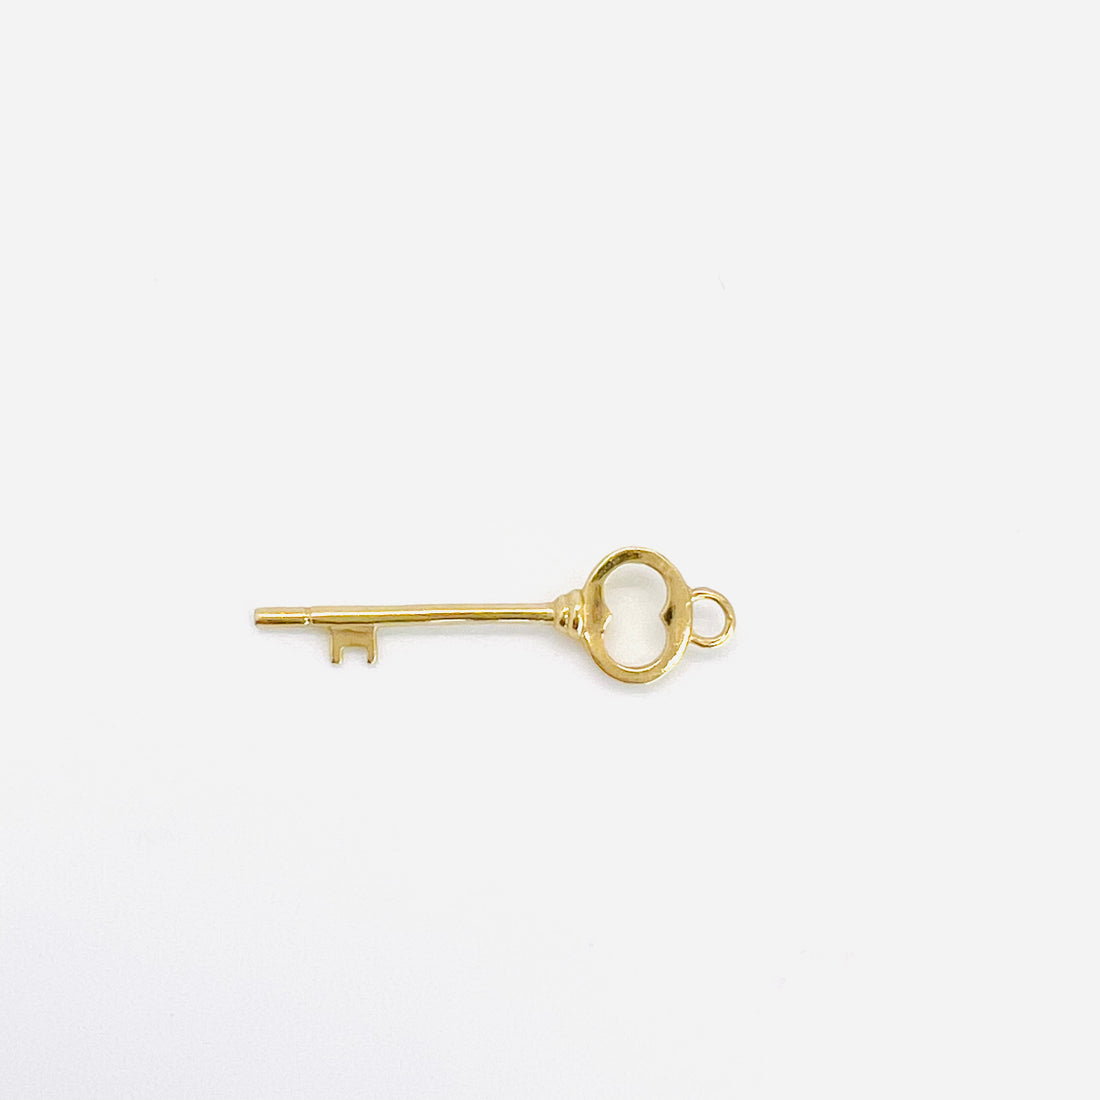 14k gold oval key charm